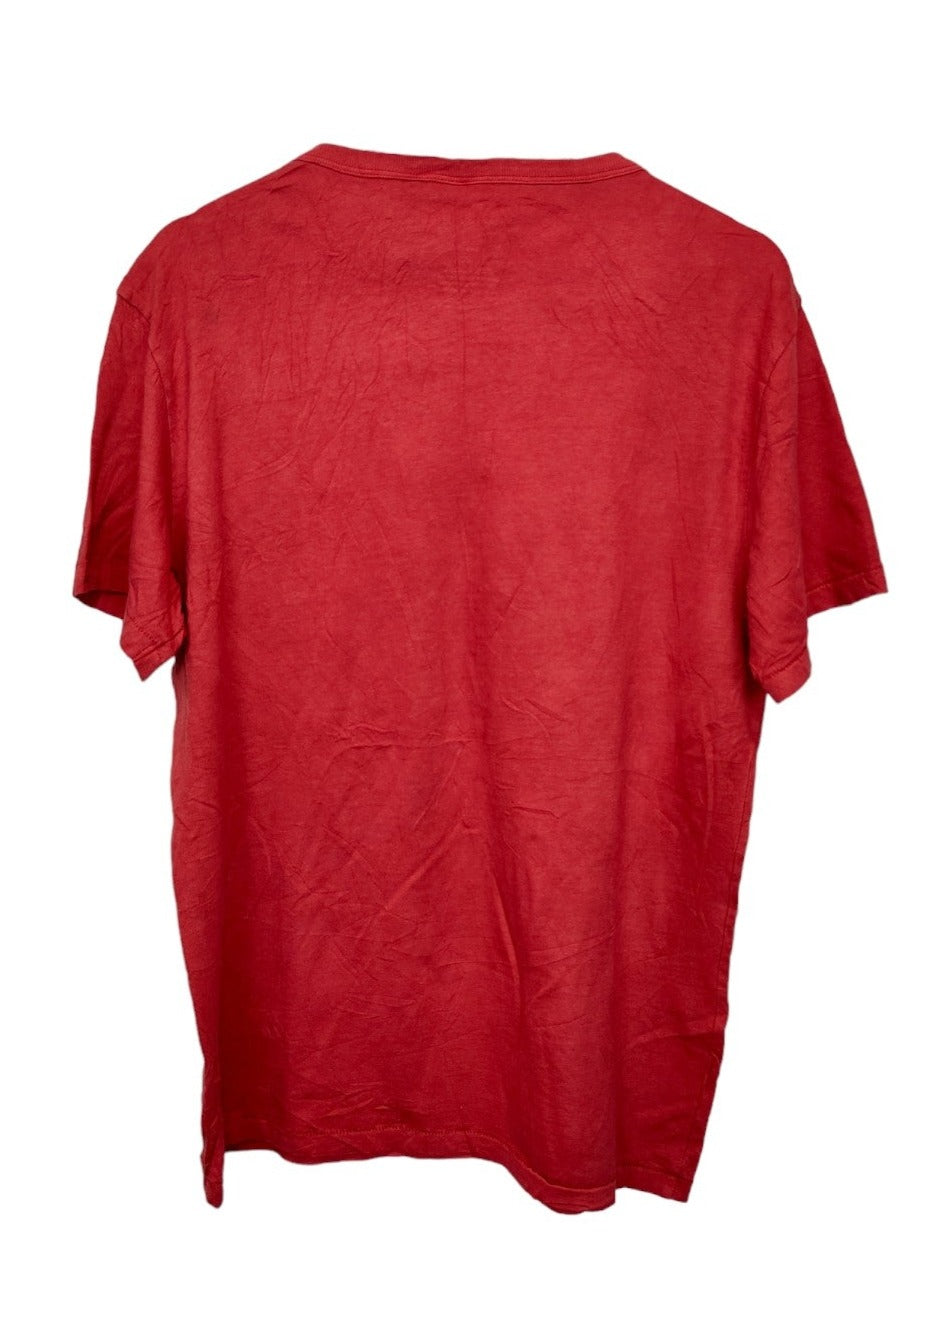 Γυναικεία, Κοντομάνικη Μπλούζα MICKEY MOUSE DISNEY σε Κόκκινο χρώμα (Large)